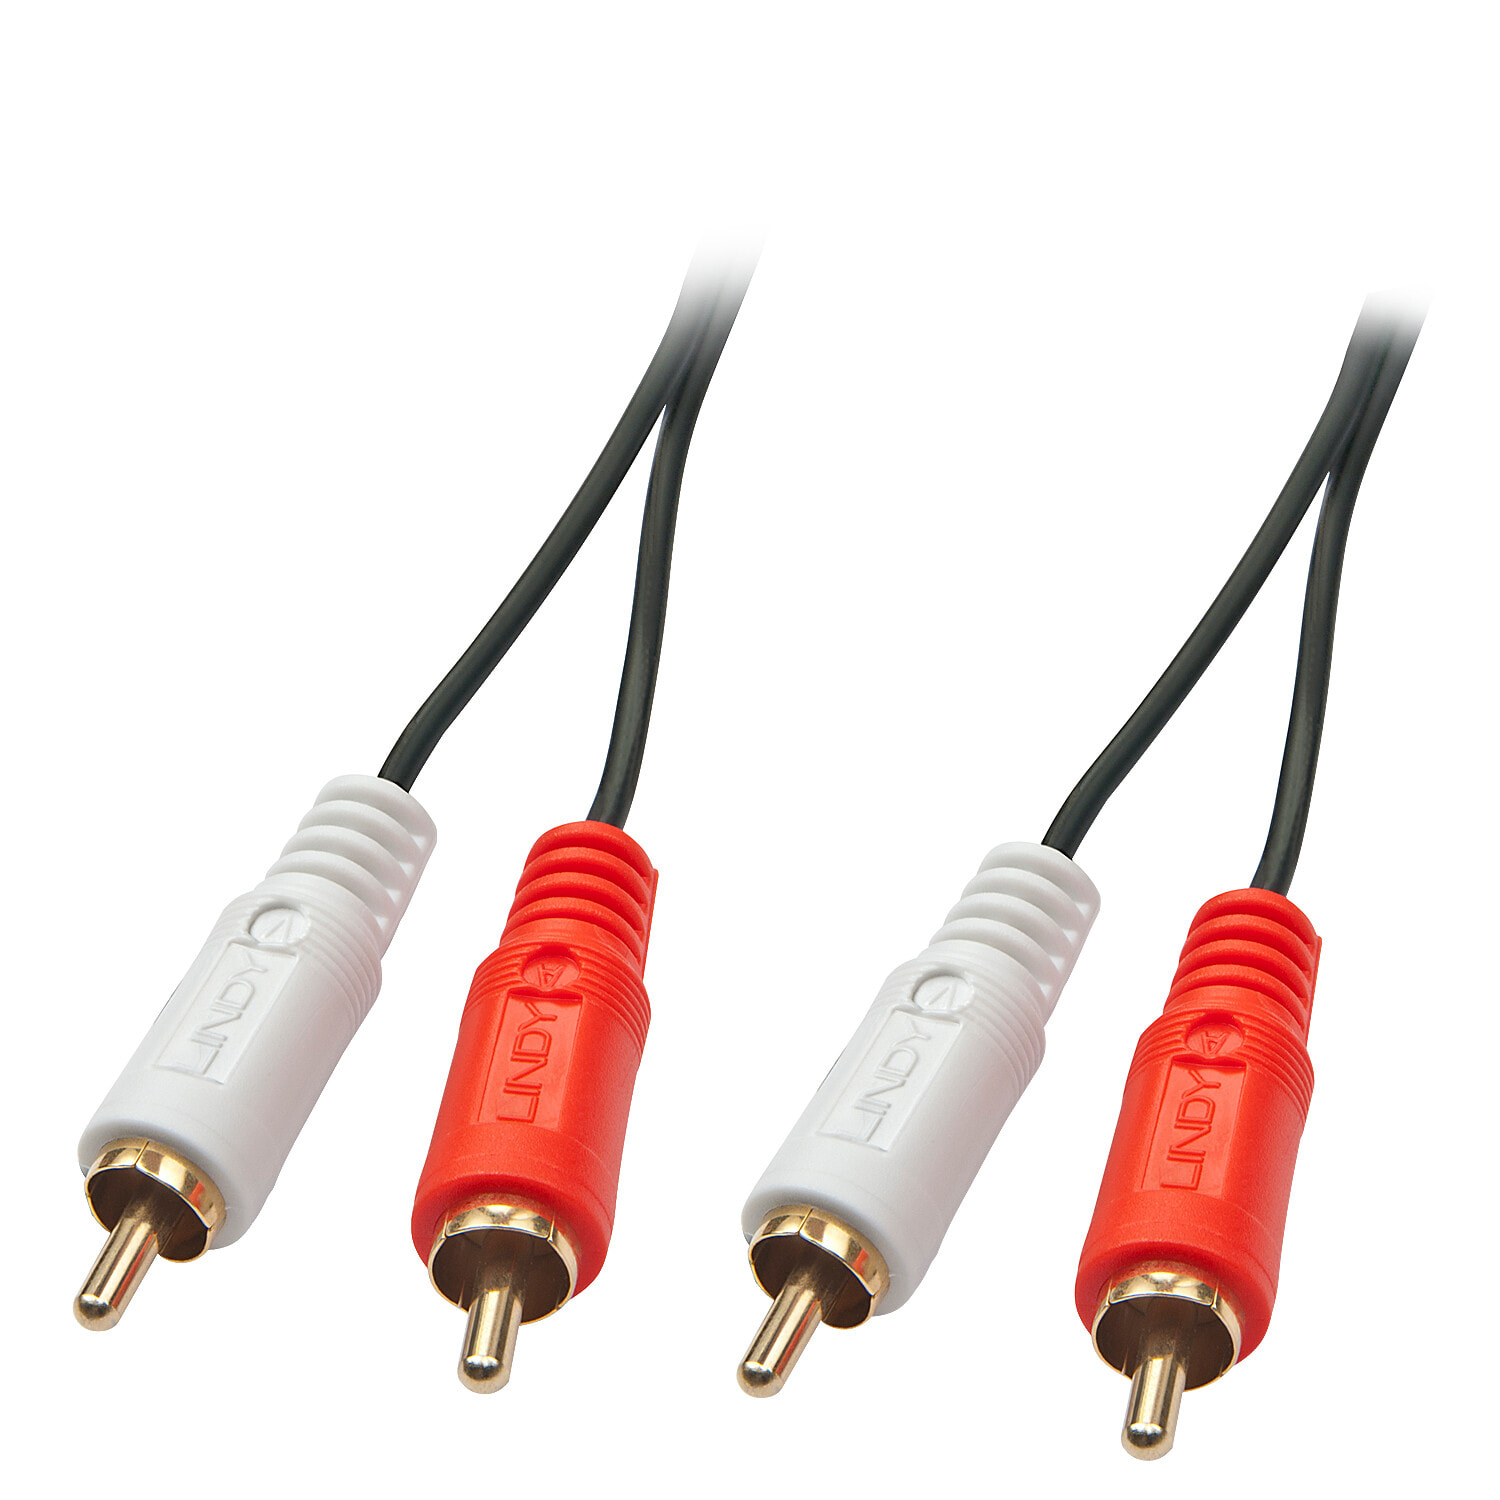 Lindy 35663 аудио кабель 5 m 2 x RCA Черный, Красный, Белый